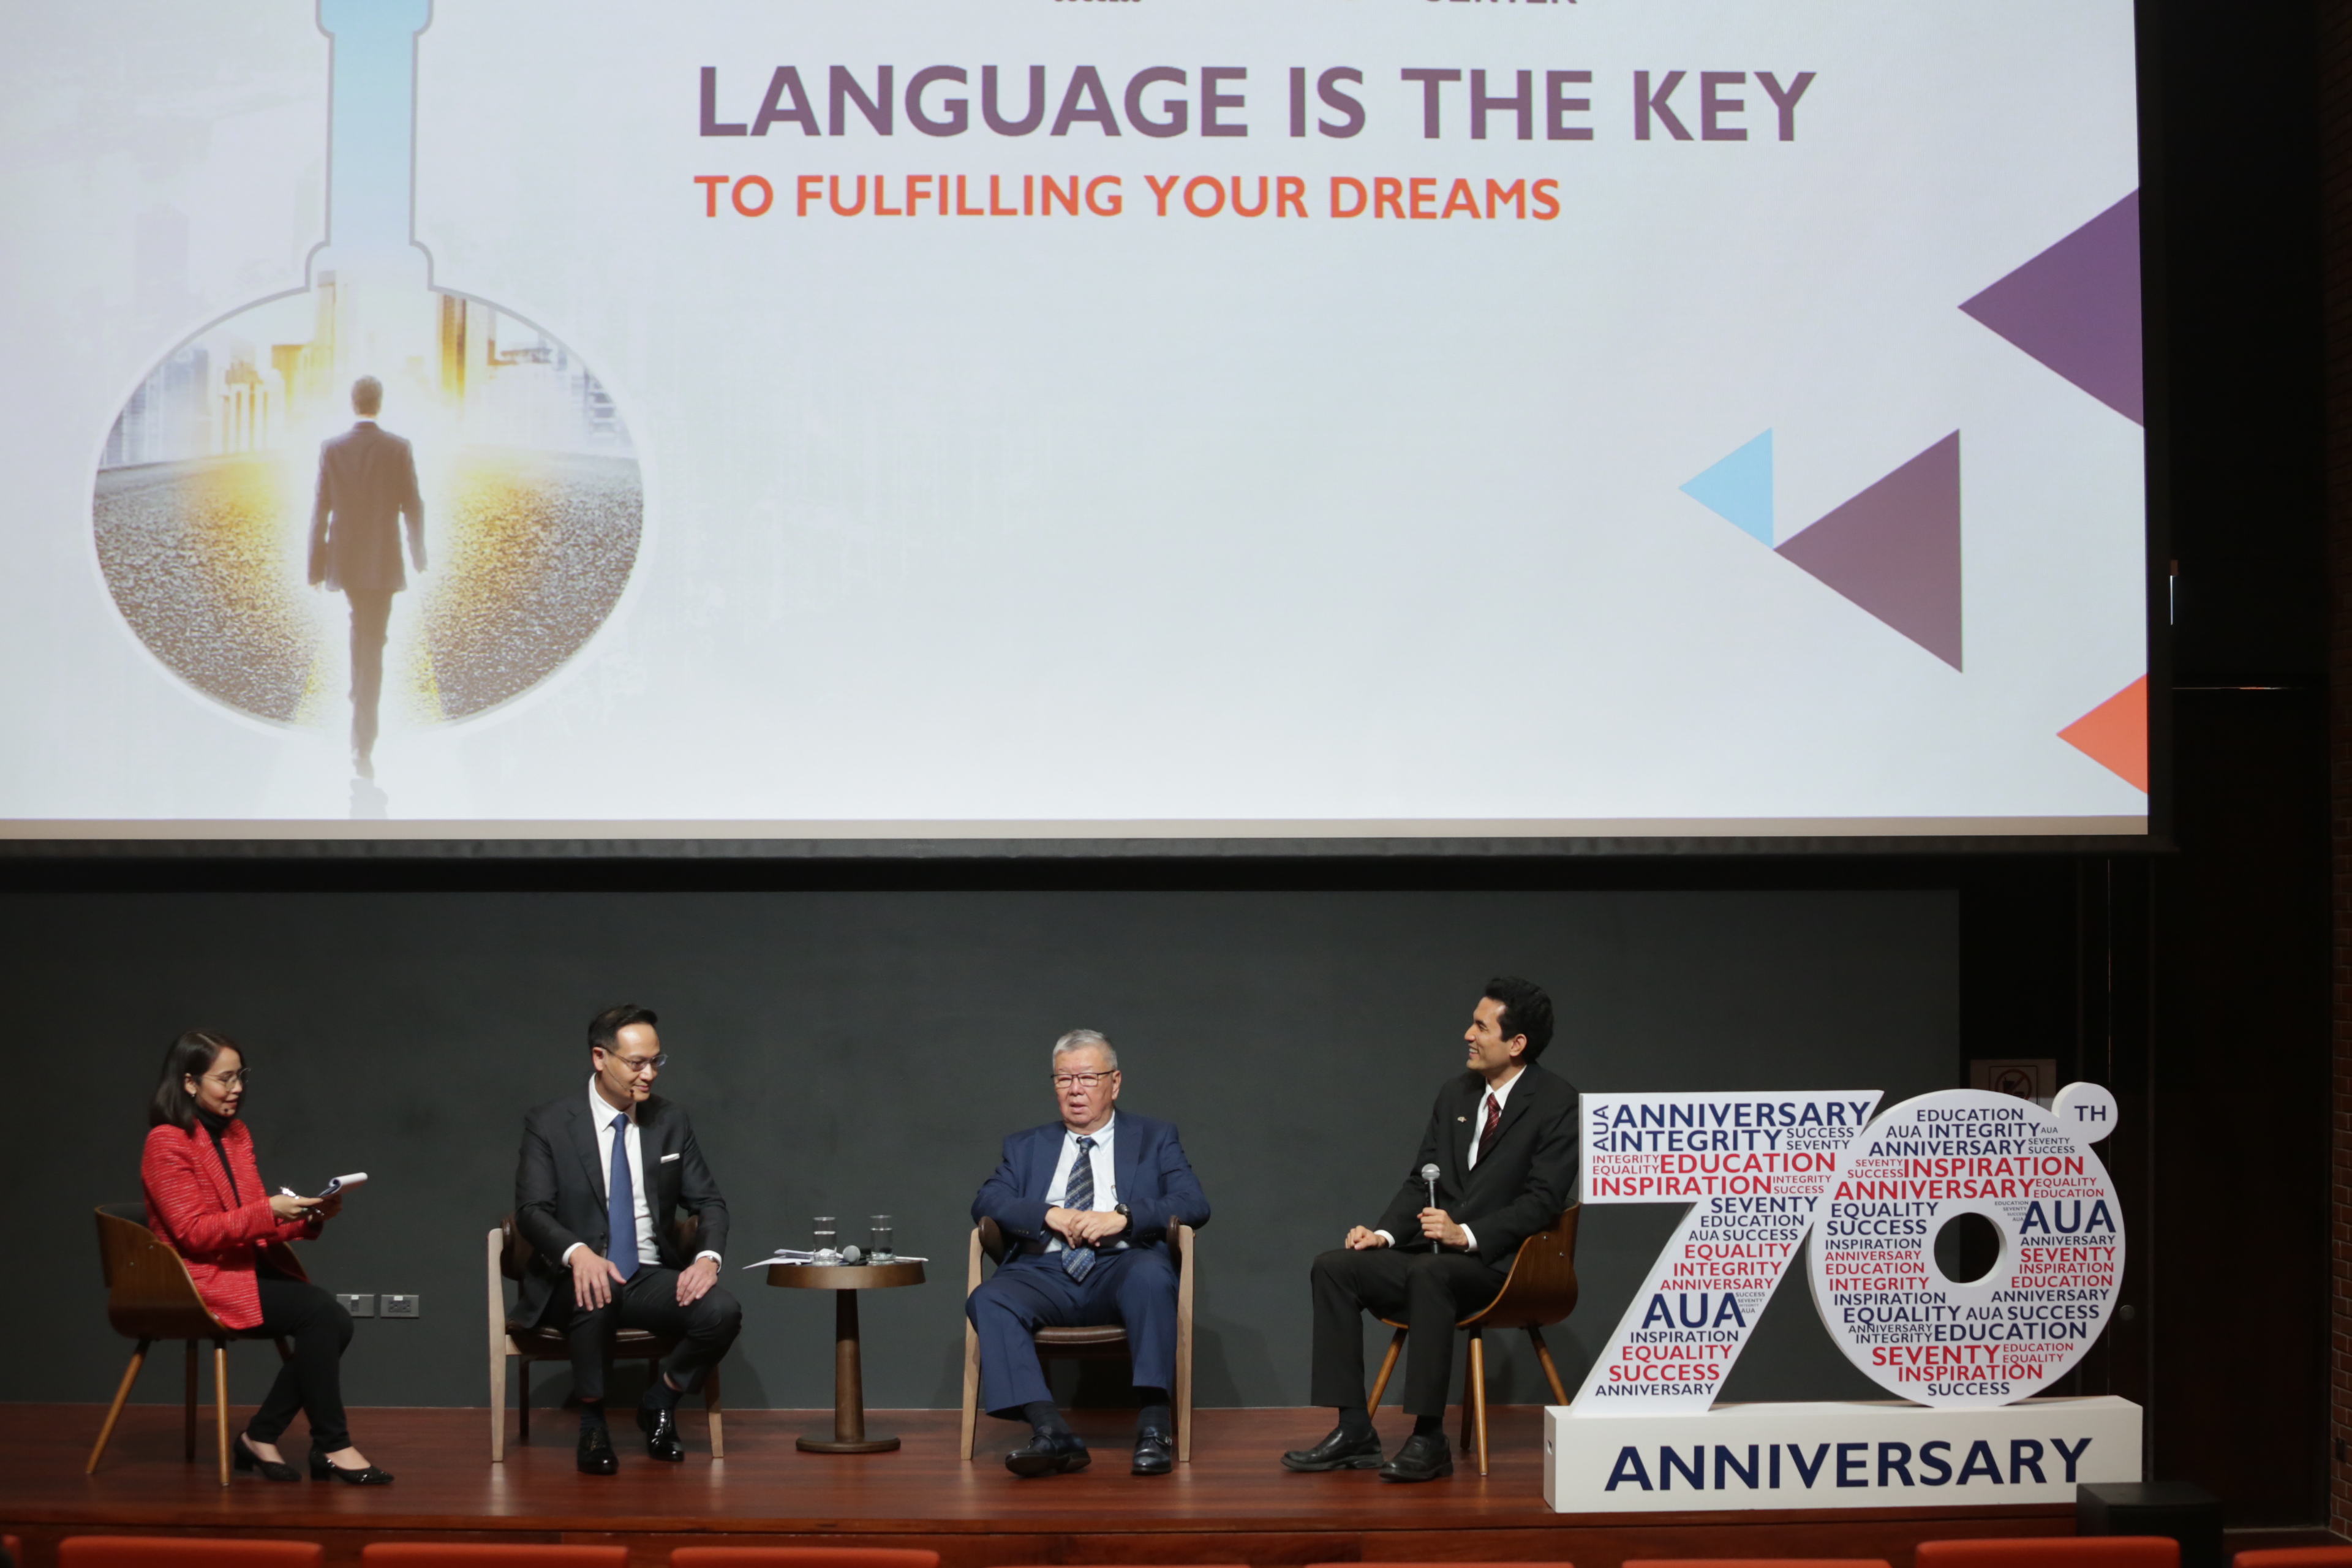 เอยูเอ” ก้าวสู่ปีที่ 70 ชูความโดดเด่นด้านหลักสูตร Aua  กุญแจที่เติมเต็มทุกความฝัน สู่ความสำเร็จ ตอกย้ำผู้นำตลาดสถานสอนภาษาอันดับ 1  ของไทย | Aua Language Center